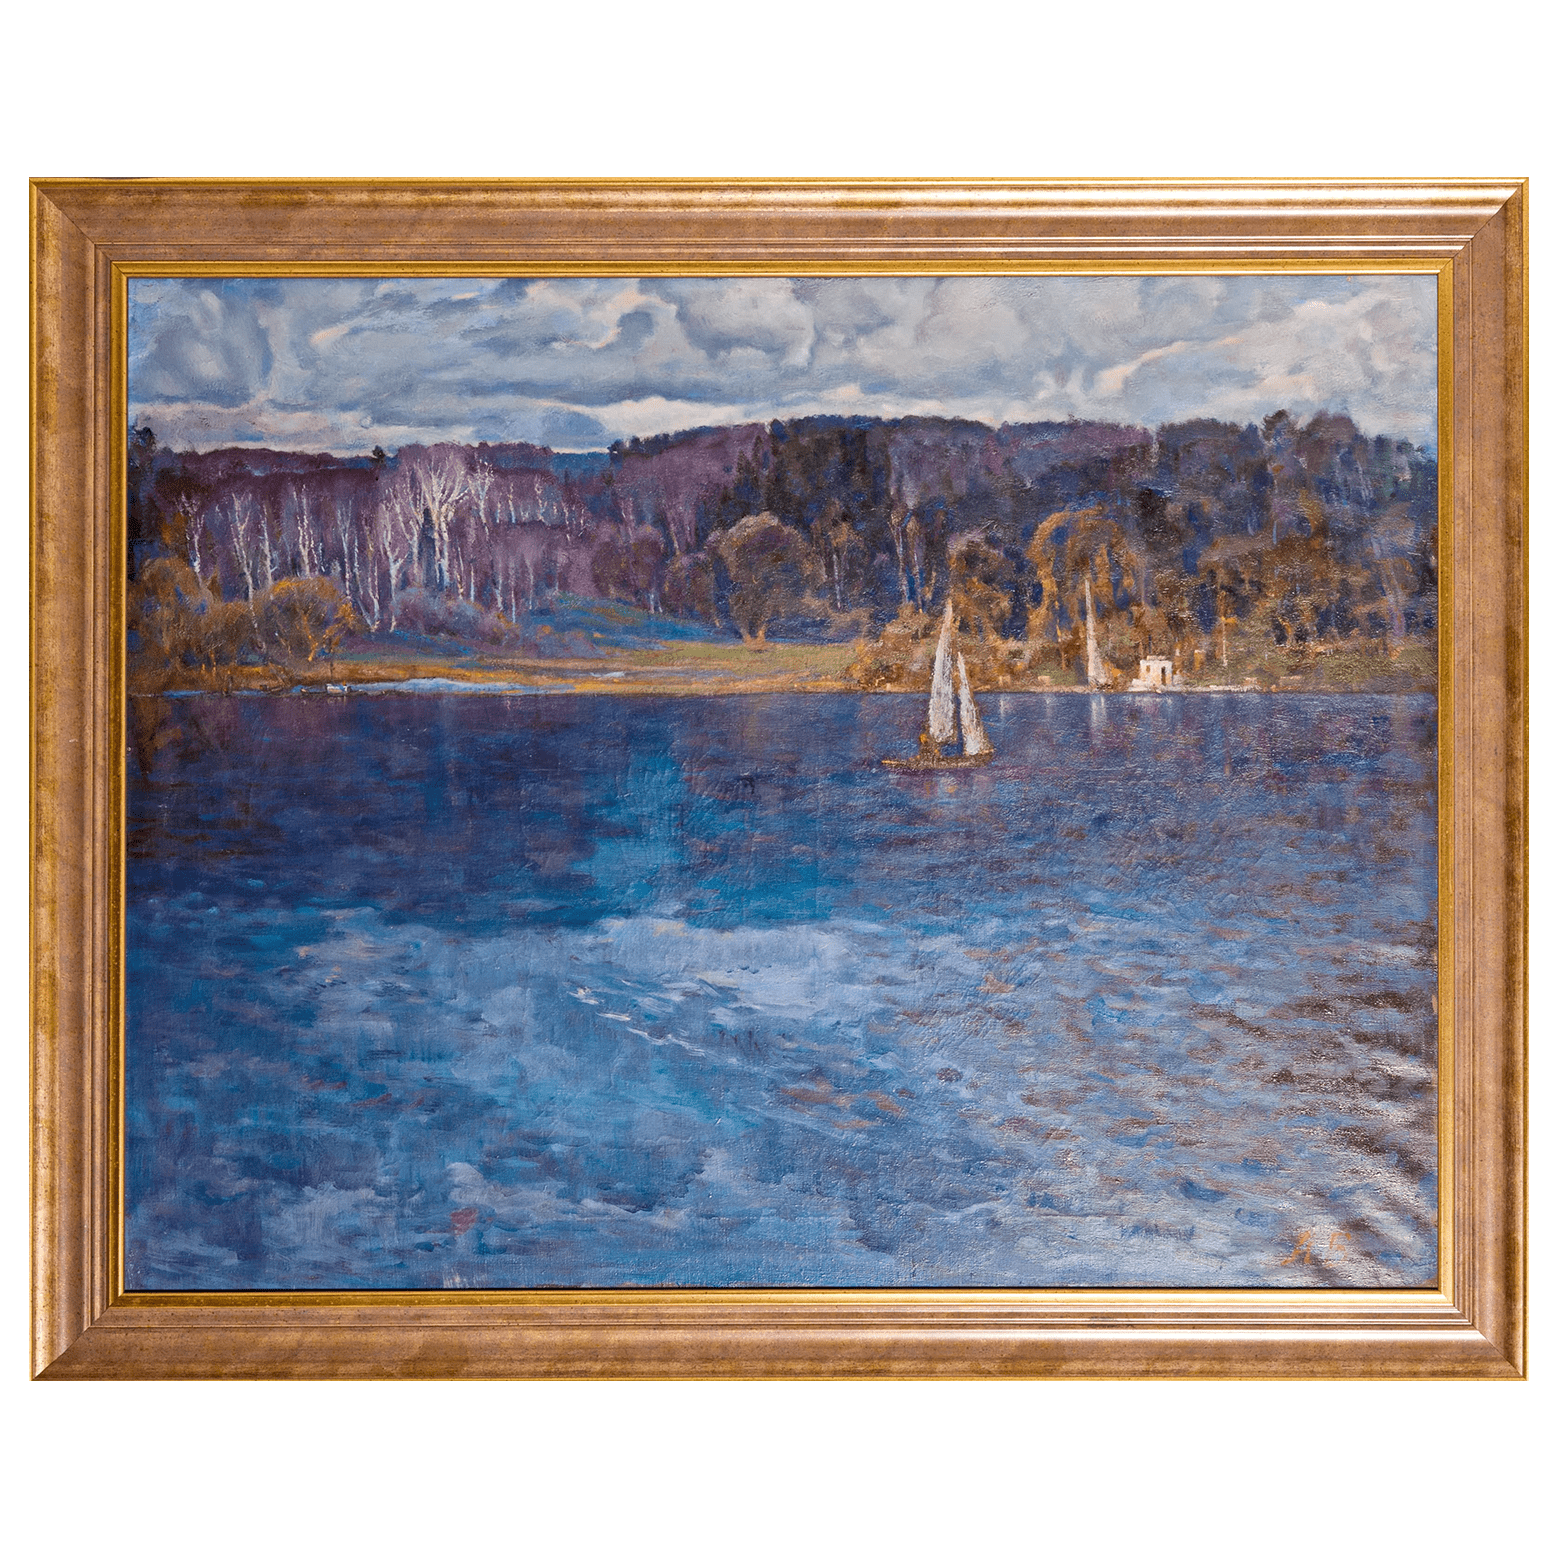 Картина «Большая вода» художника Быкова А. П. 1969 года, холст, масло